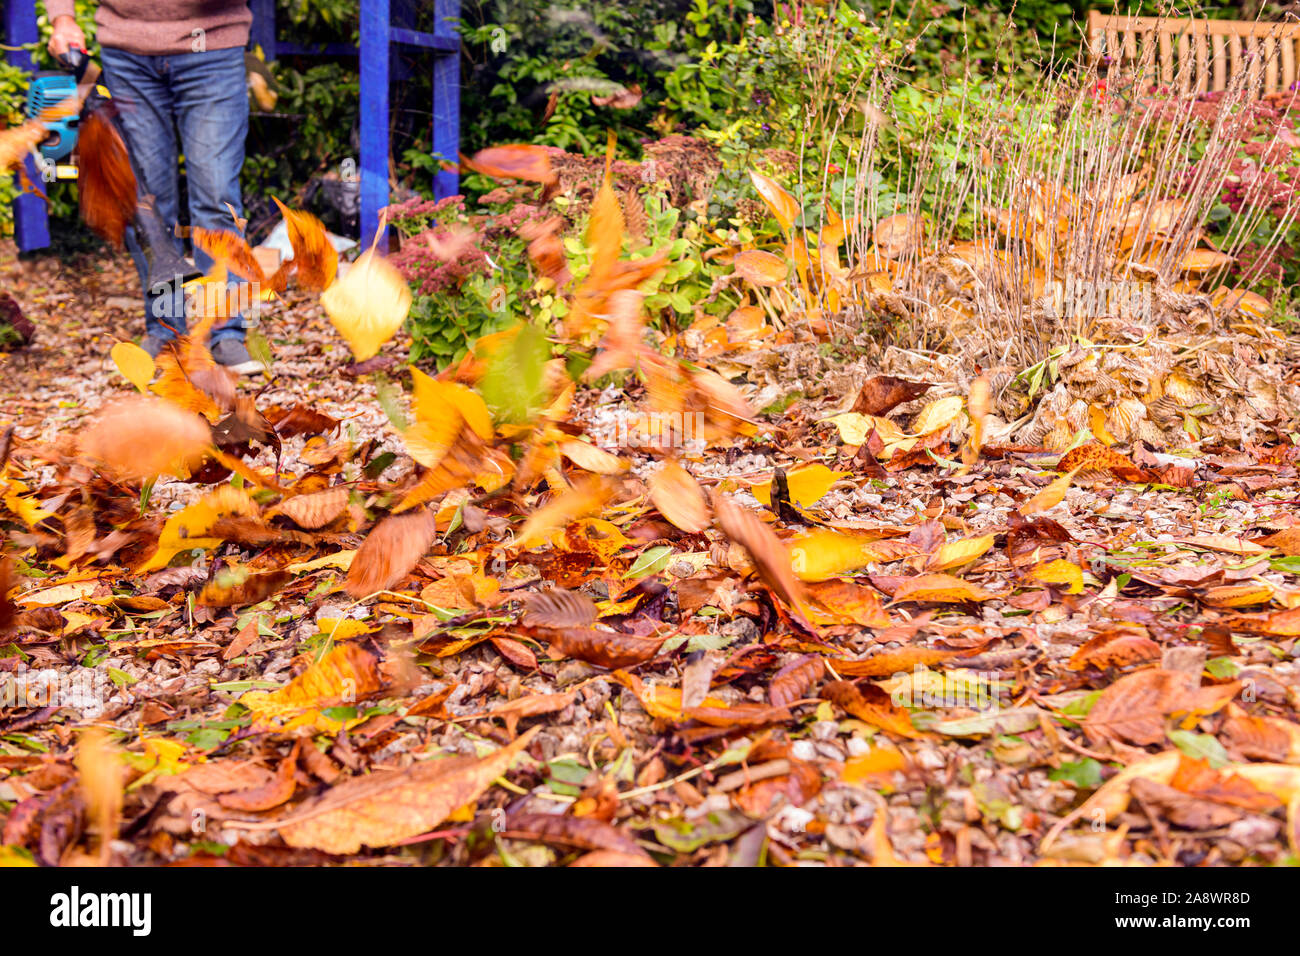 Gärtner mit Benzin Gebläse blasen und Clearing Herbst Blätter vom Garten Hof Weg Weg Weg Stockfoto